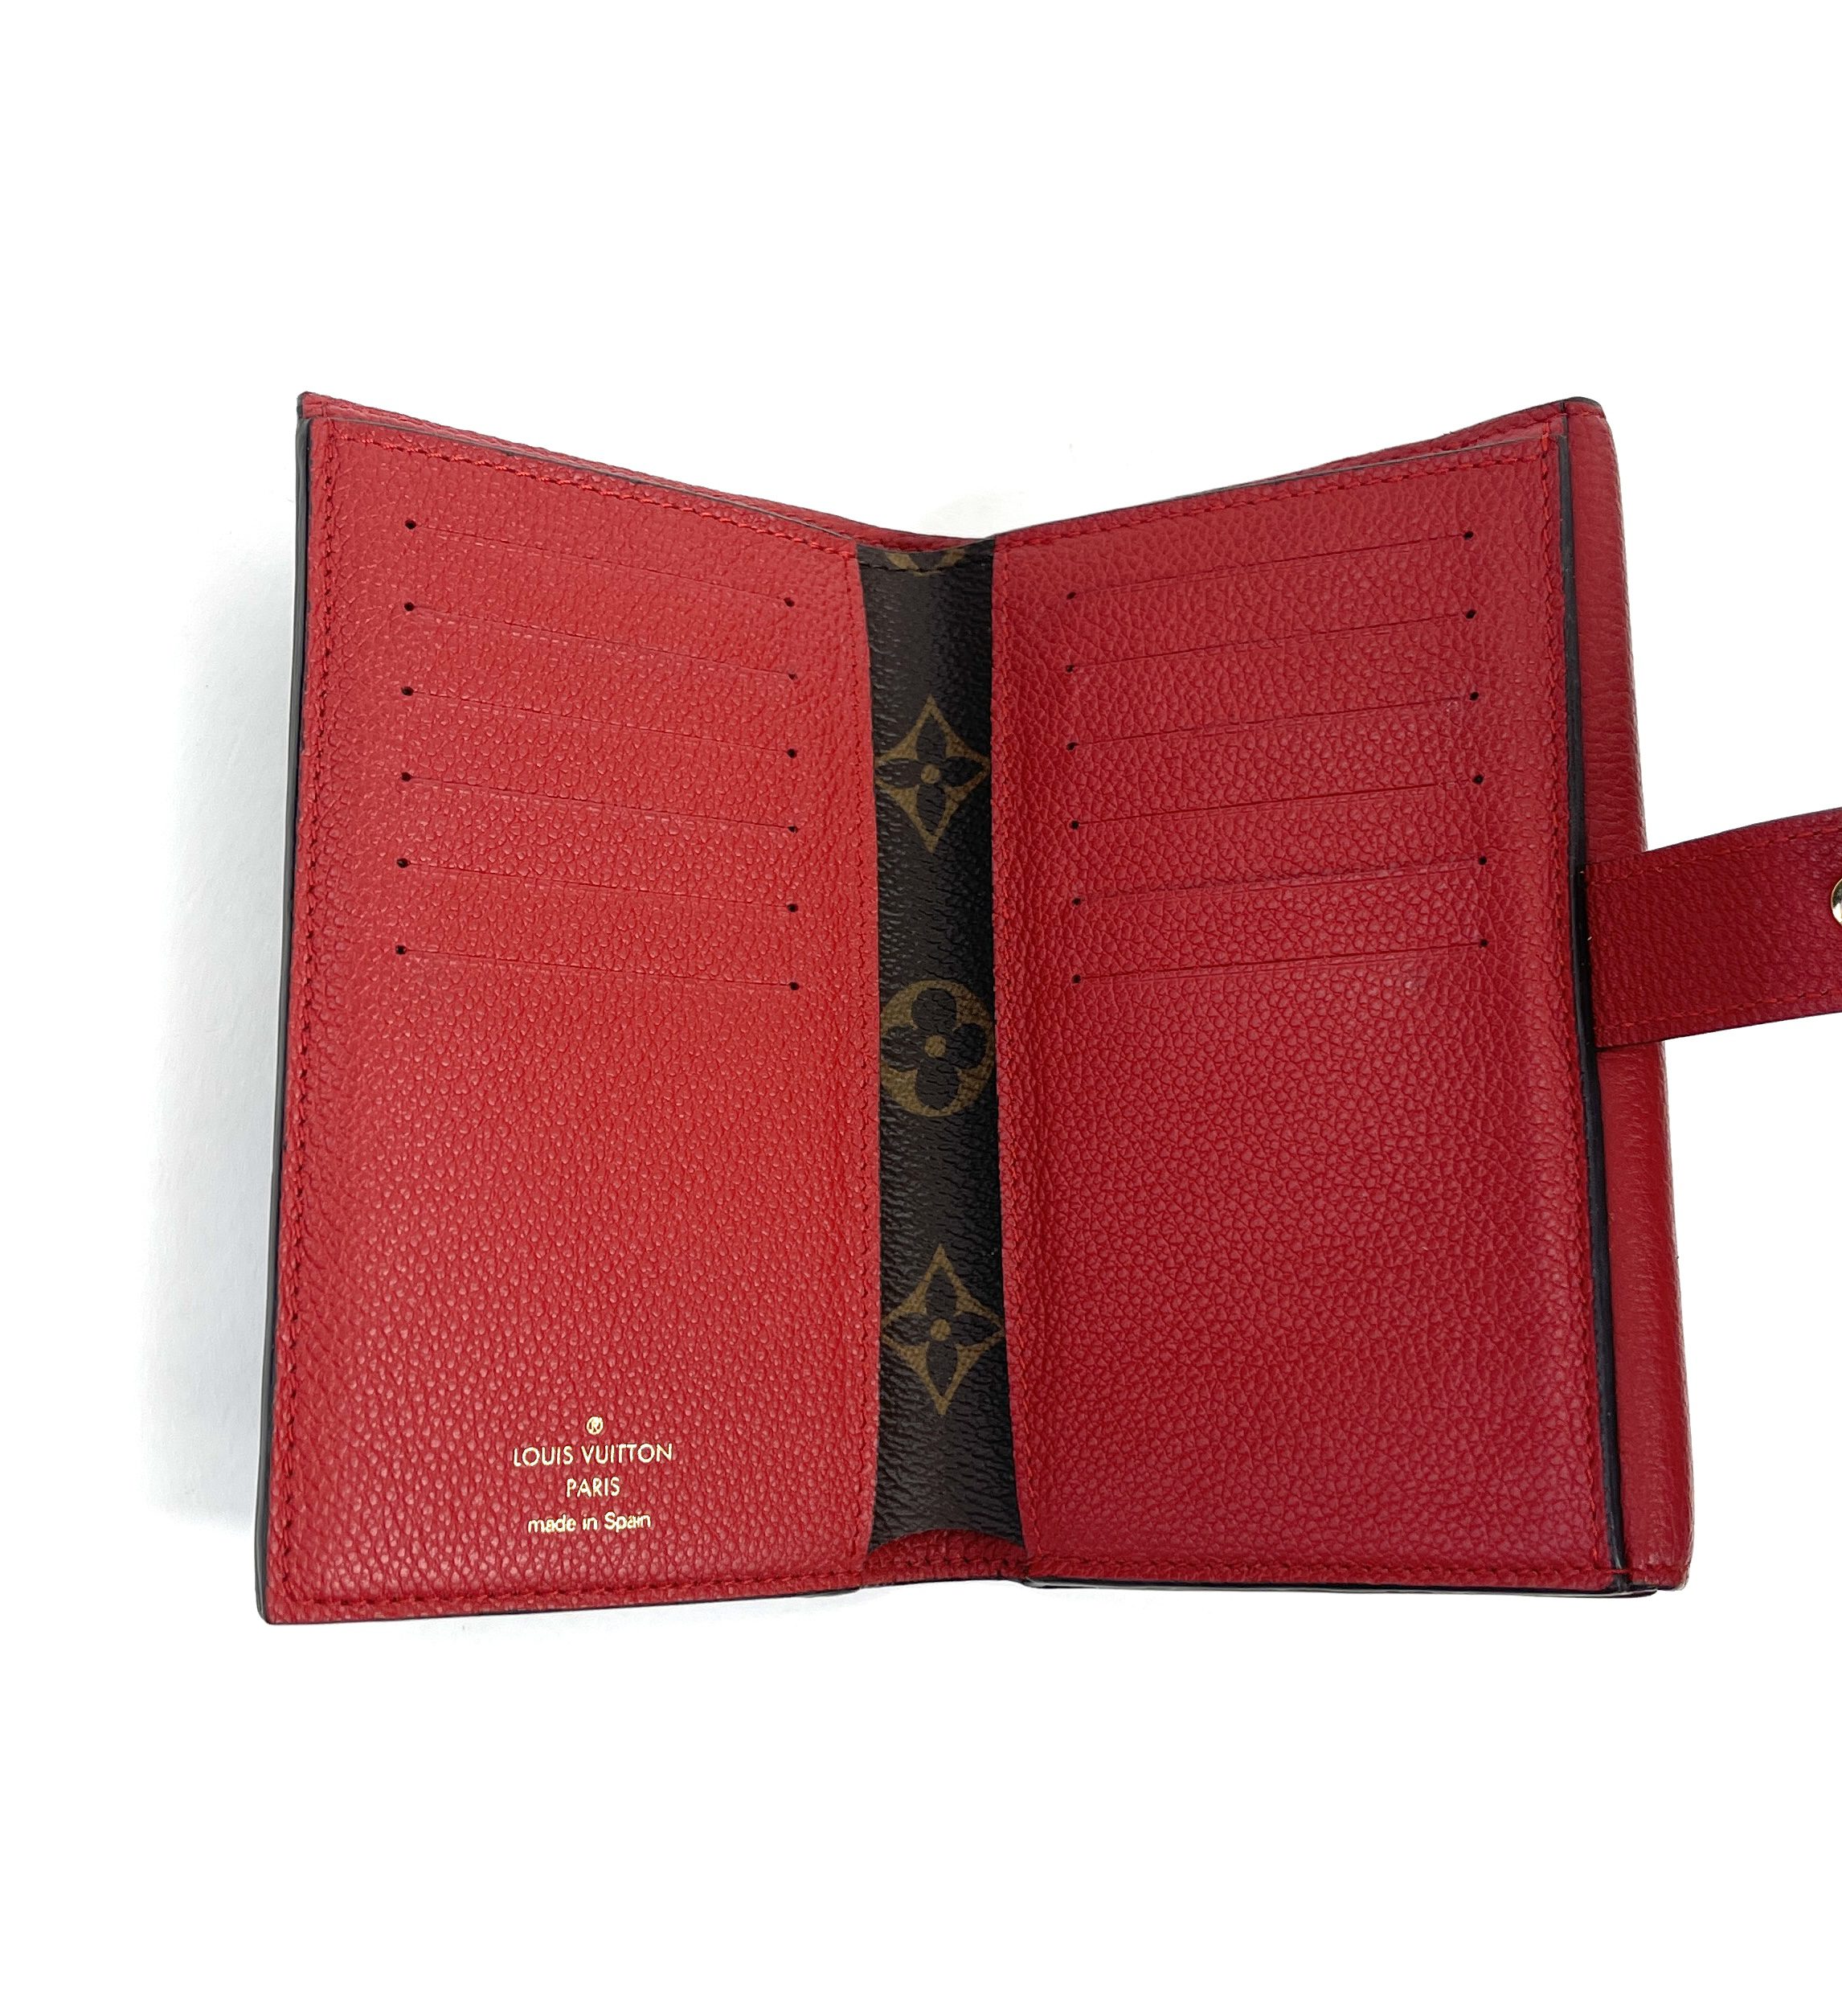 Authentic Louis Vuitton Cherise Cherry Monogram Compact Wallet Limited  Edition